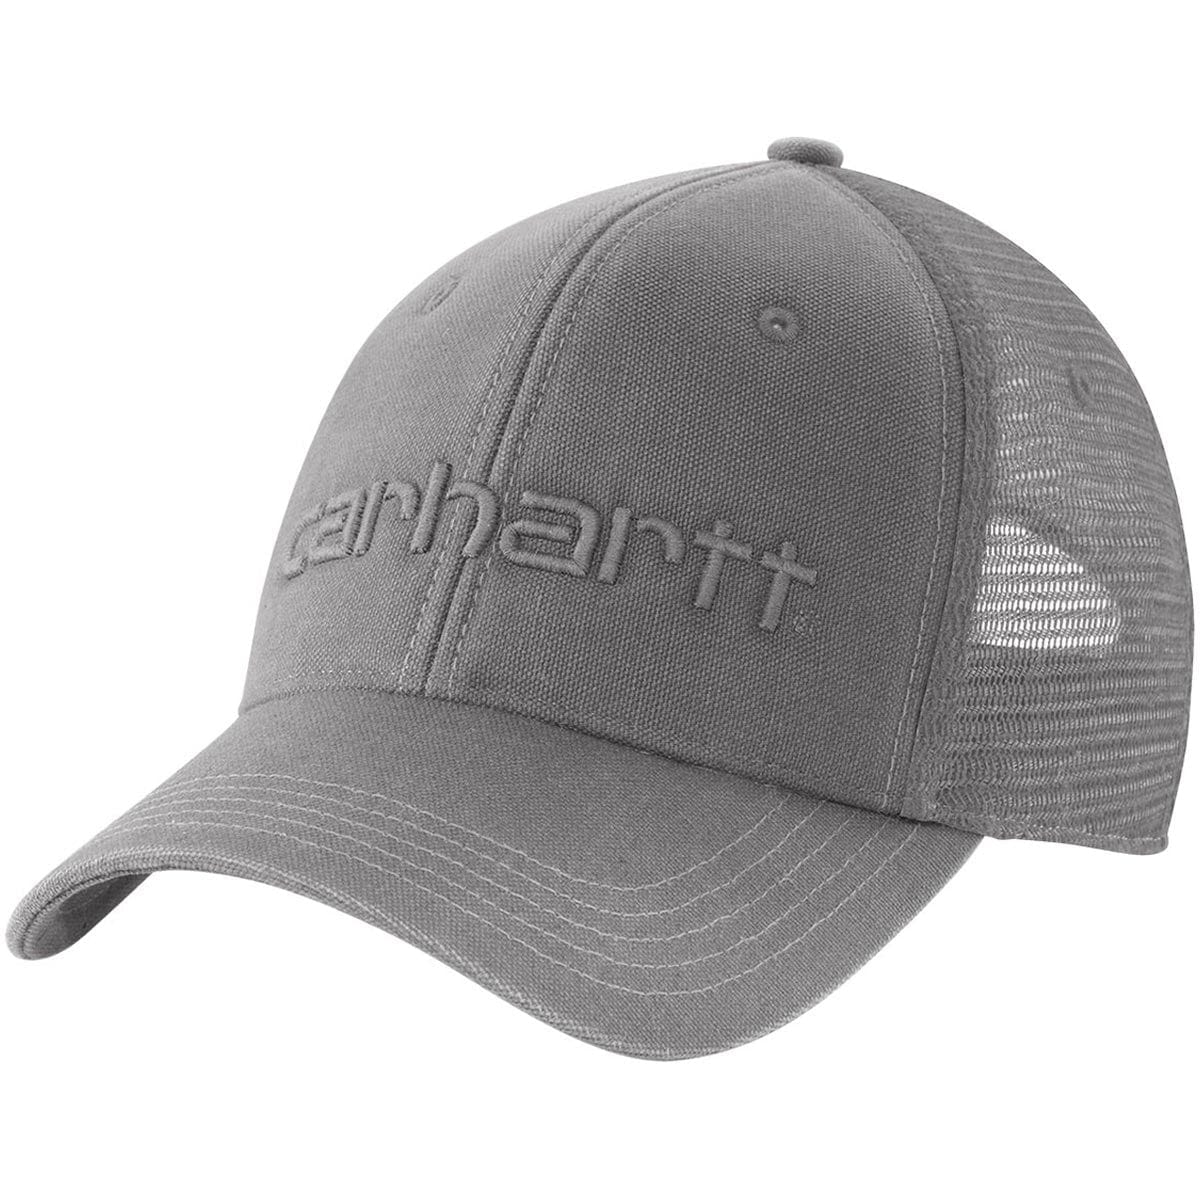 Carhartt Dunmore Mesh Back Cap